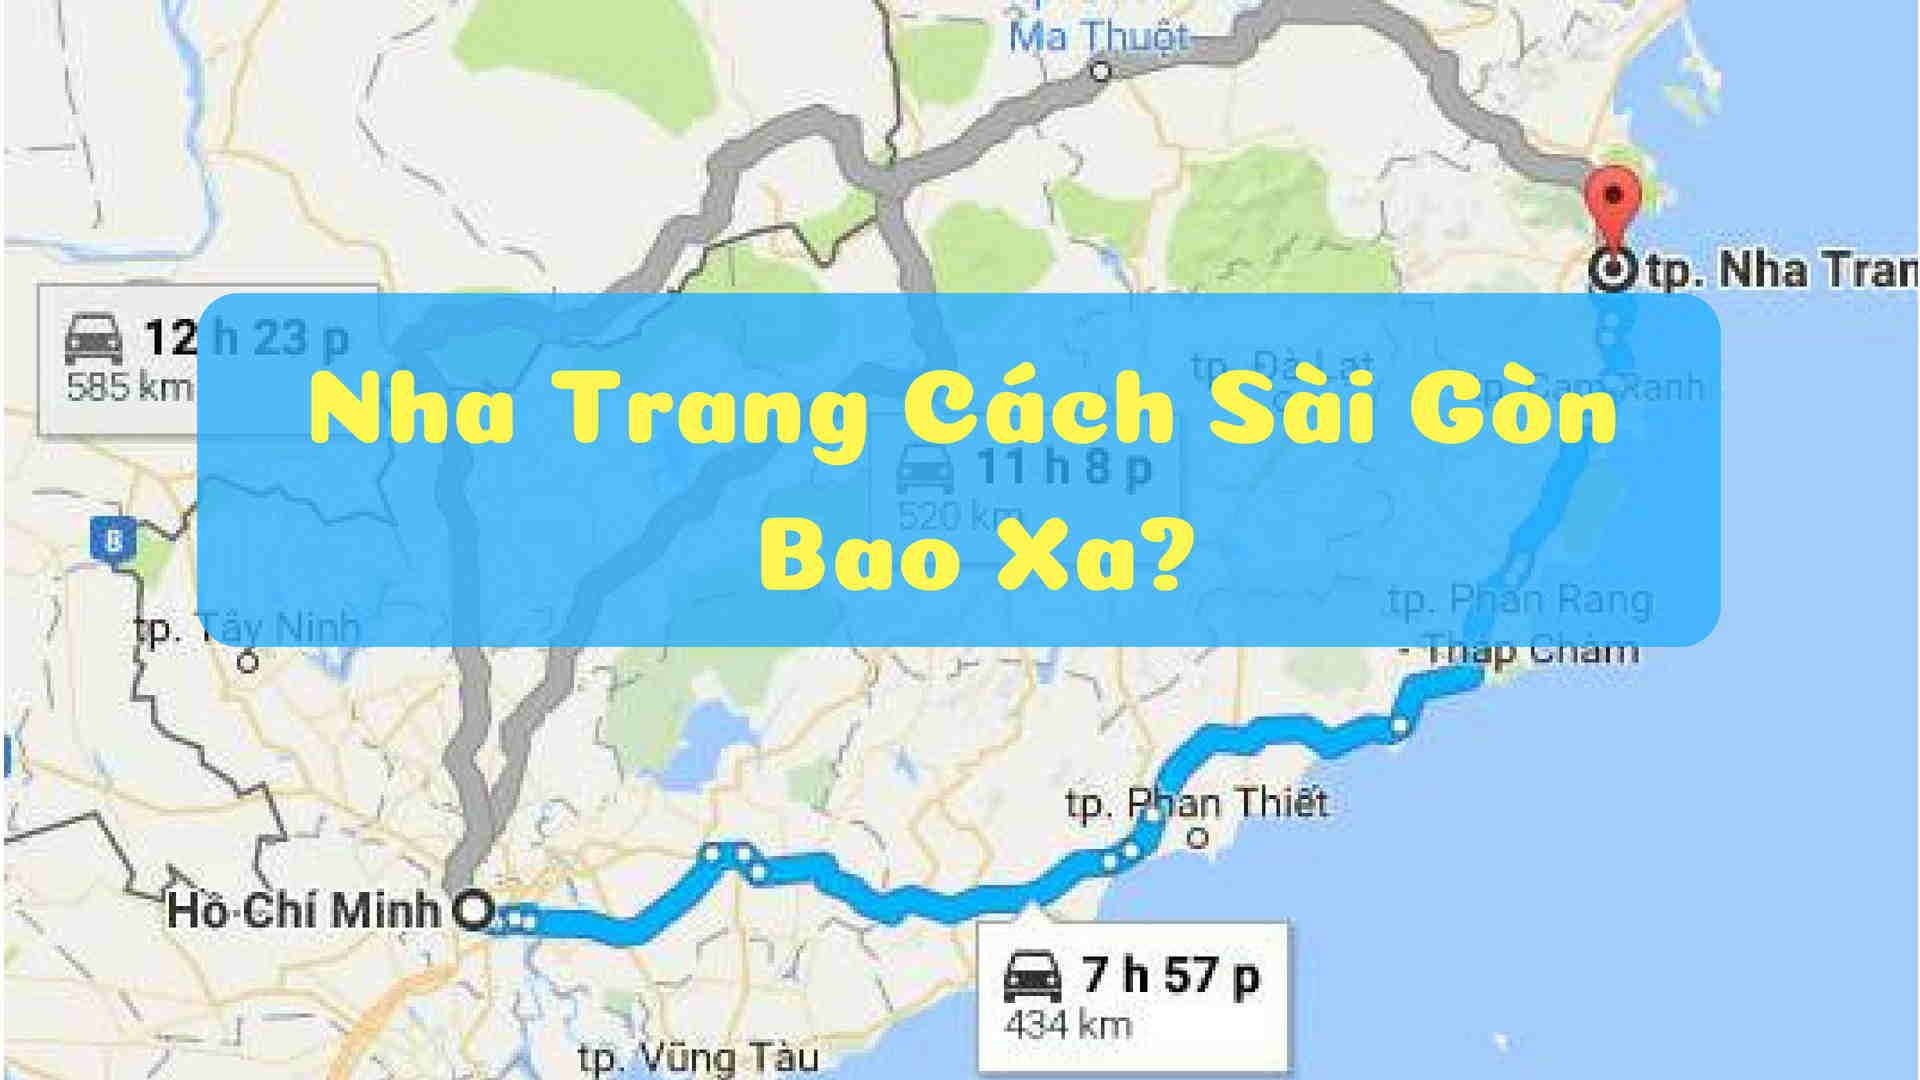 Sài Gòn Nha Trang